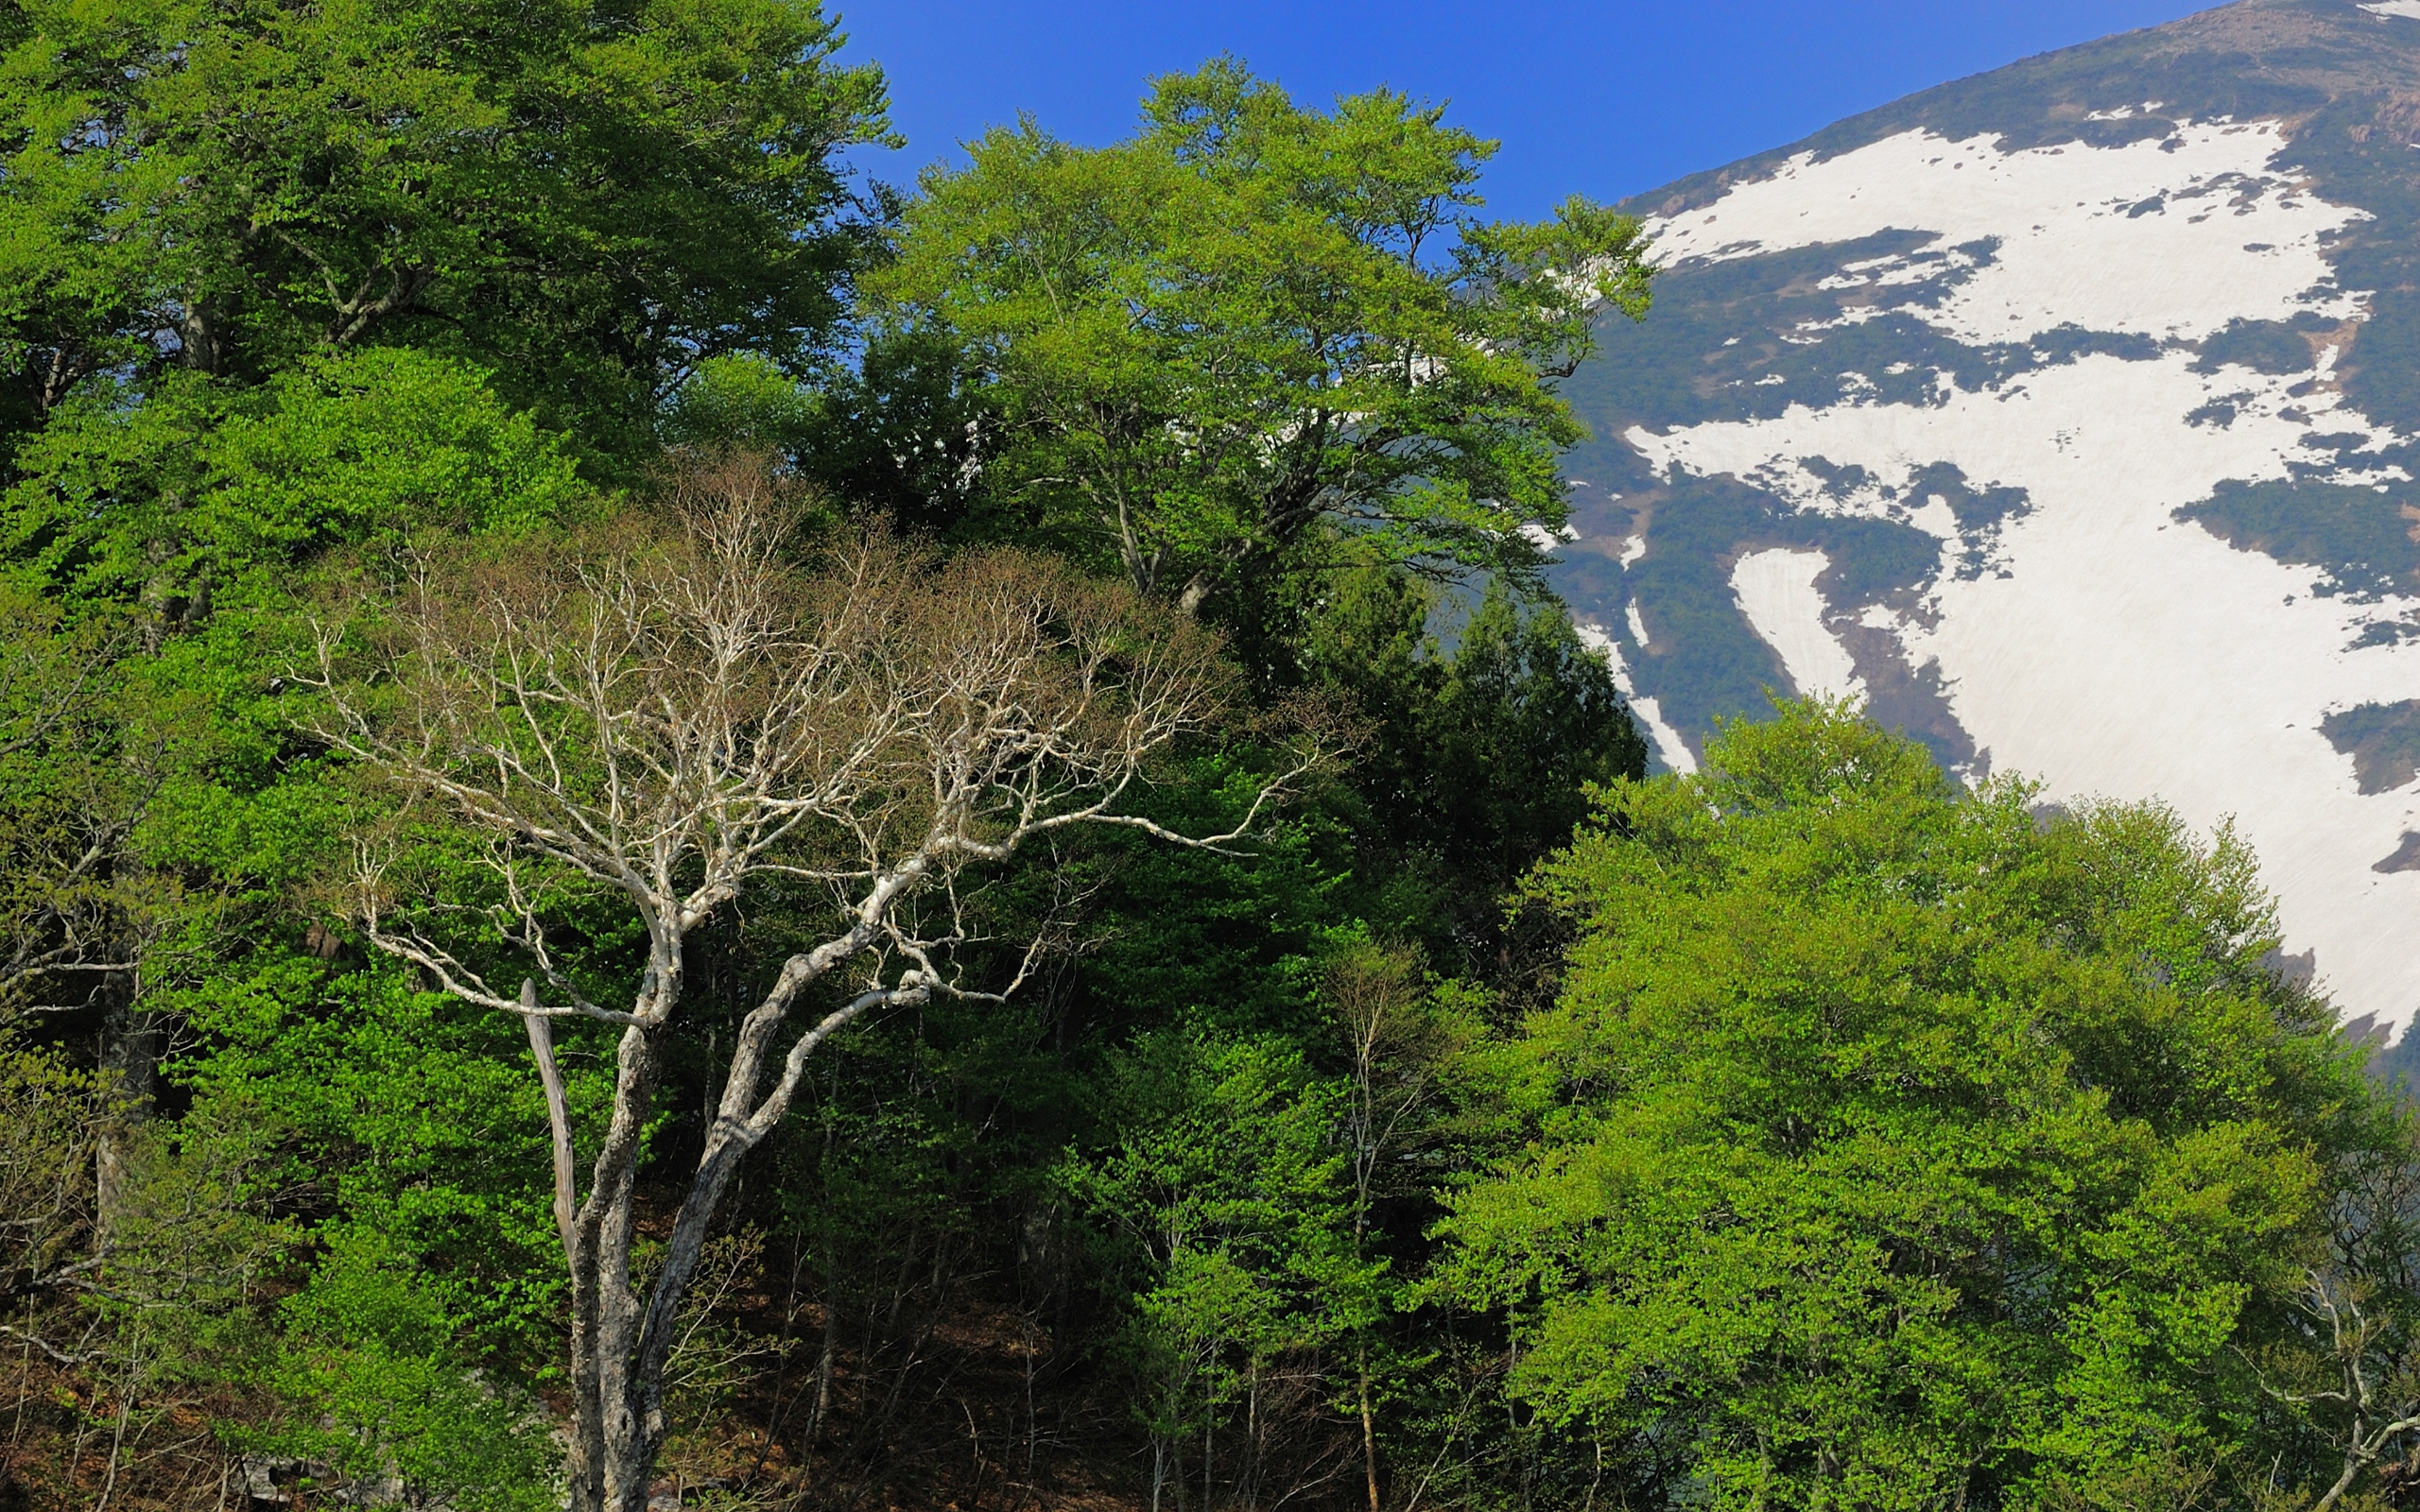 تصویری دلنشین از طبیعت و درختان سر سبز پشت به کوه برفی مخصوص چاپ